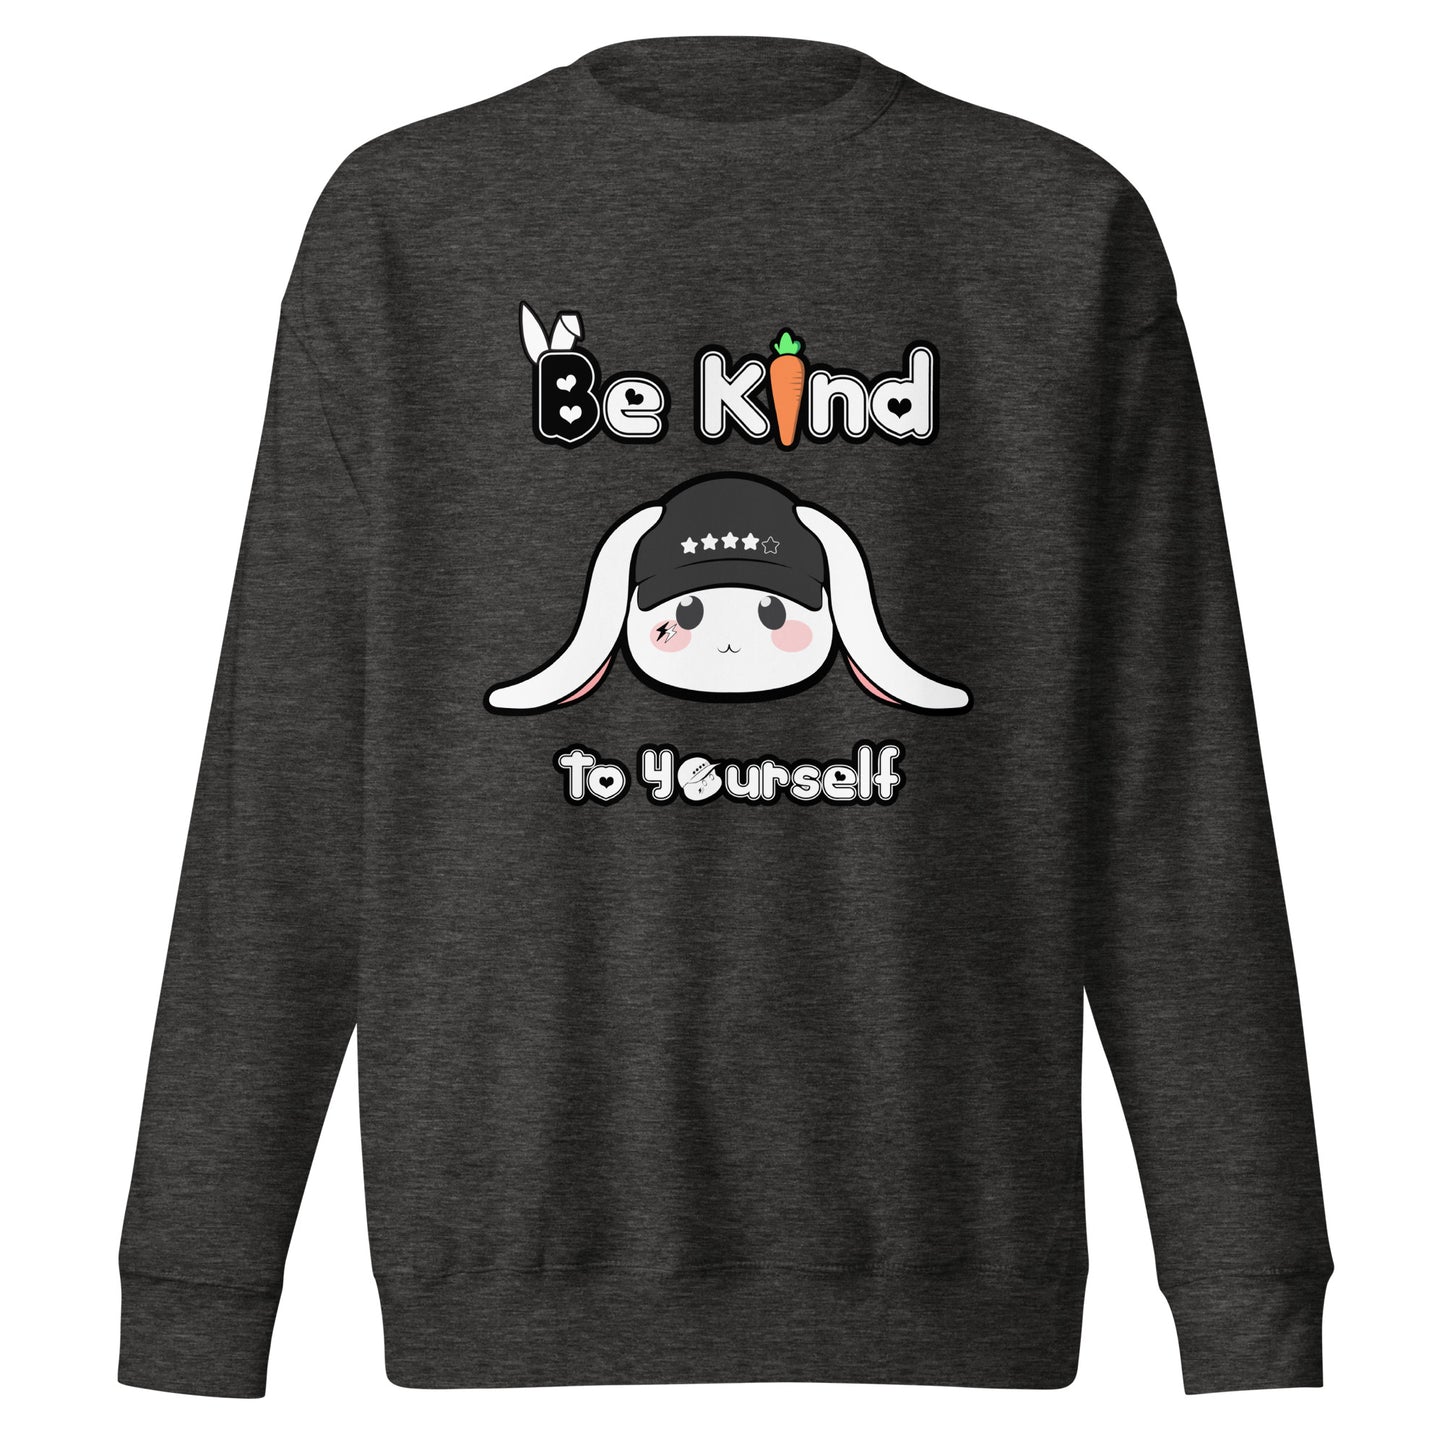 Be Kind to Yourself - Unisex Sweatshirt